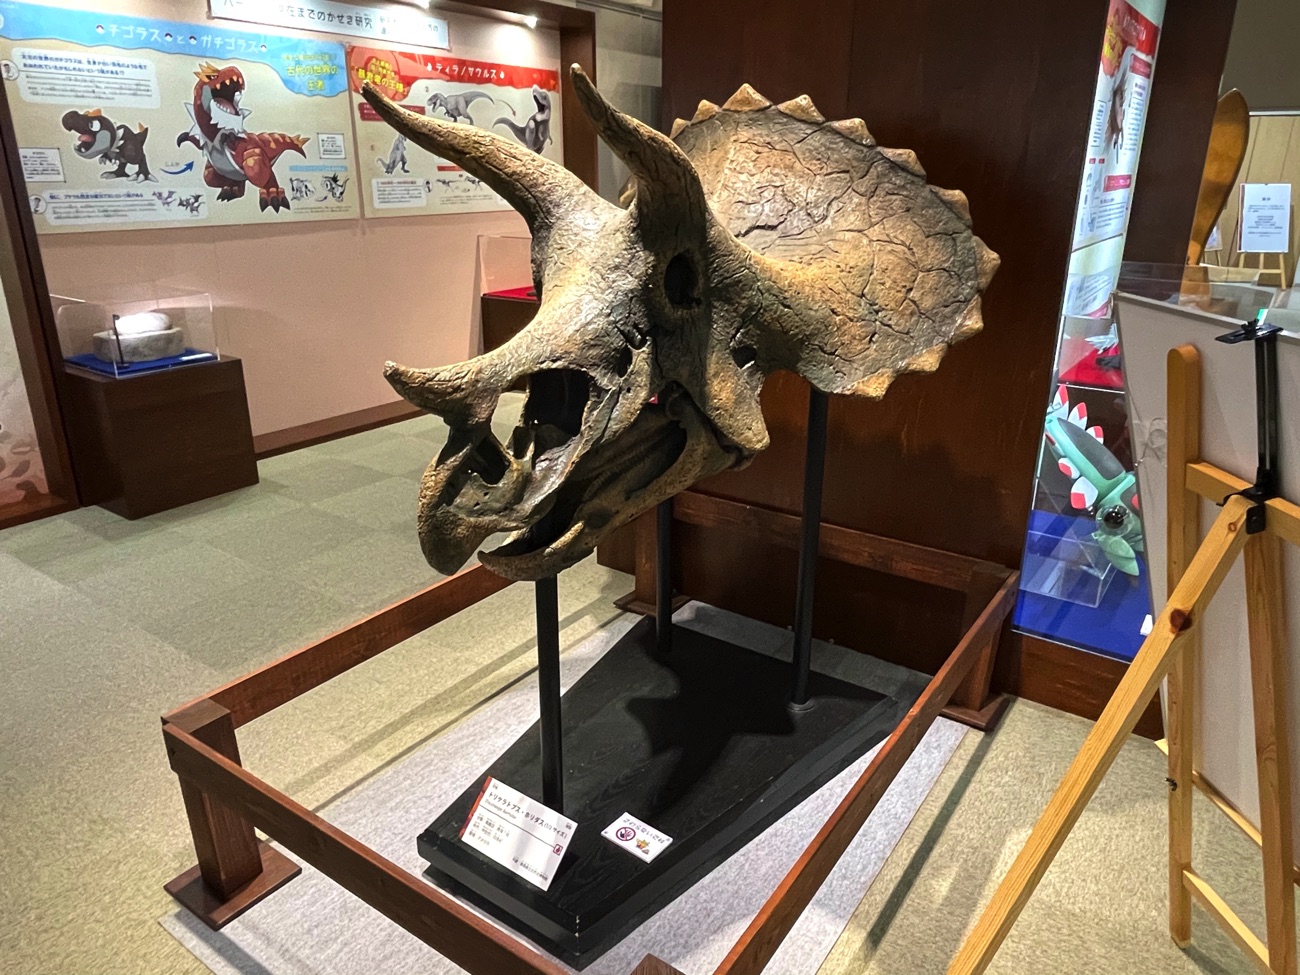 「トリケラトプス」の骨格模型